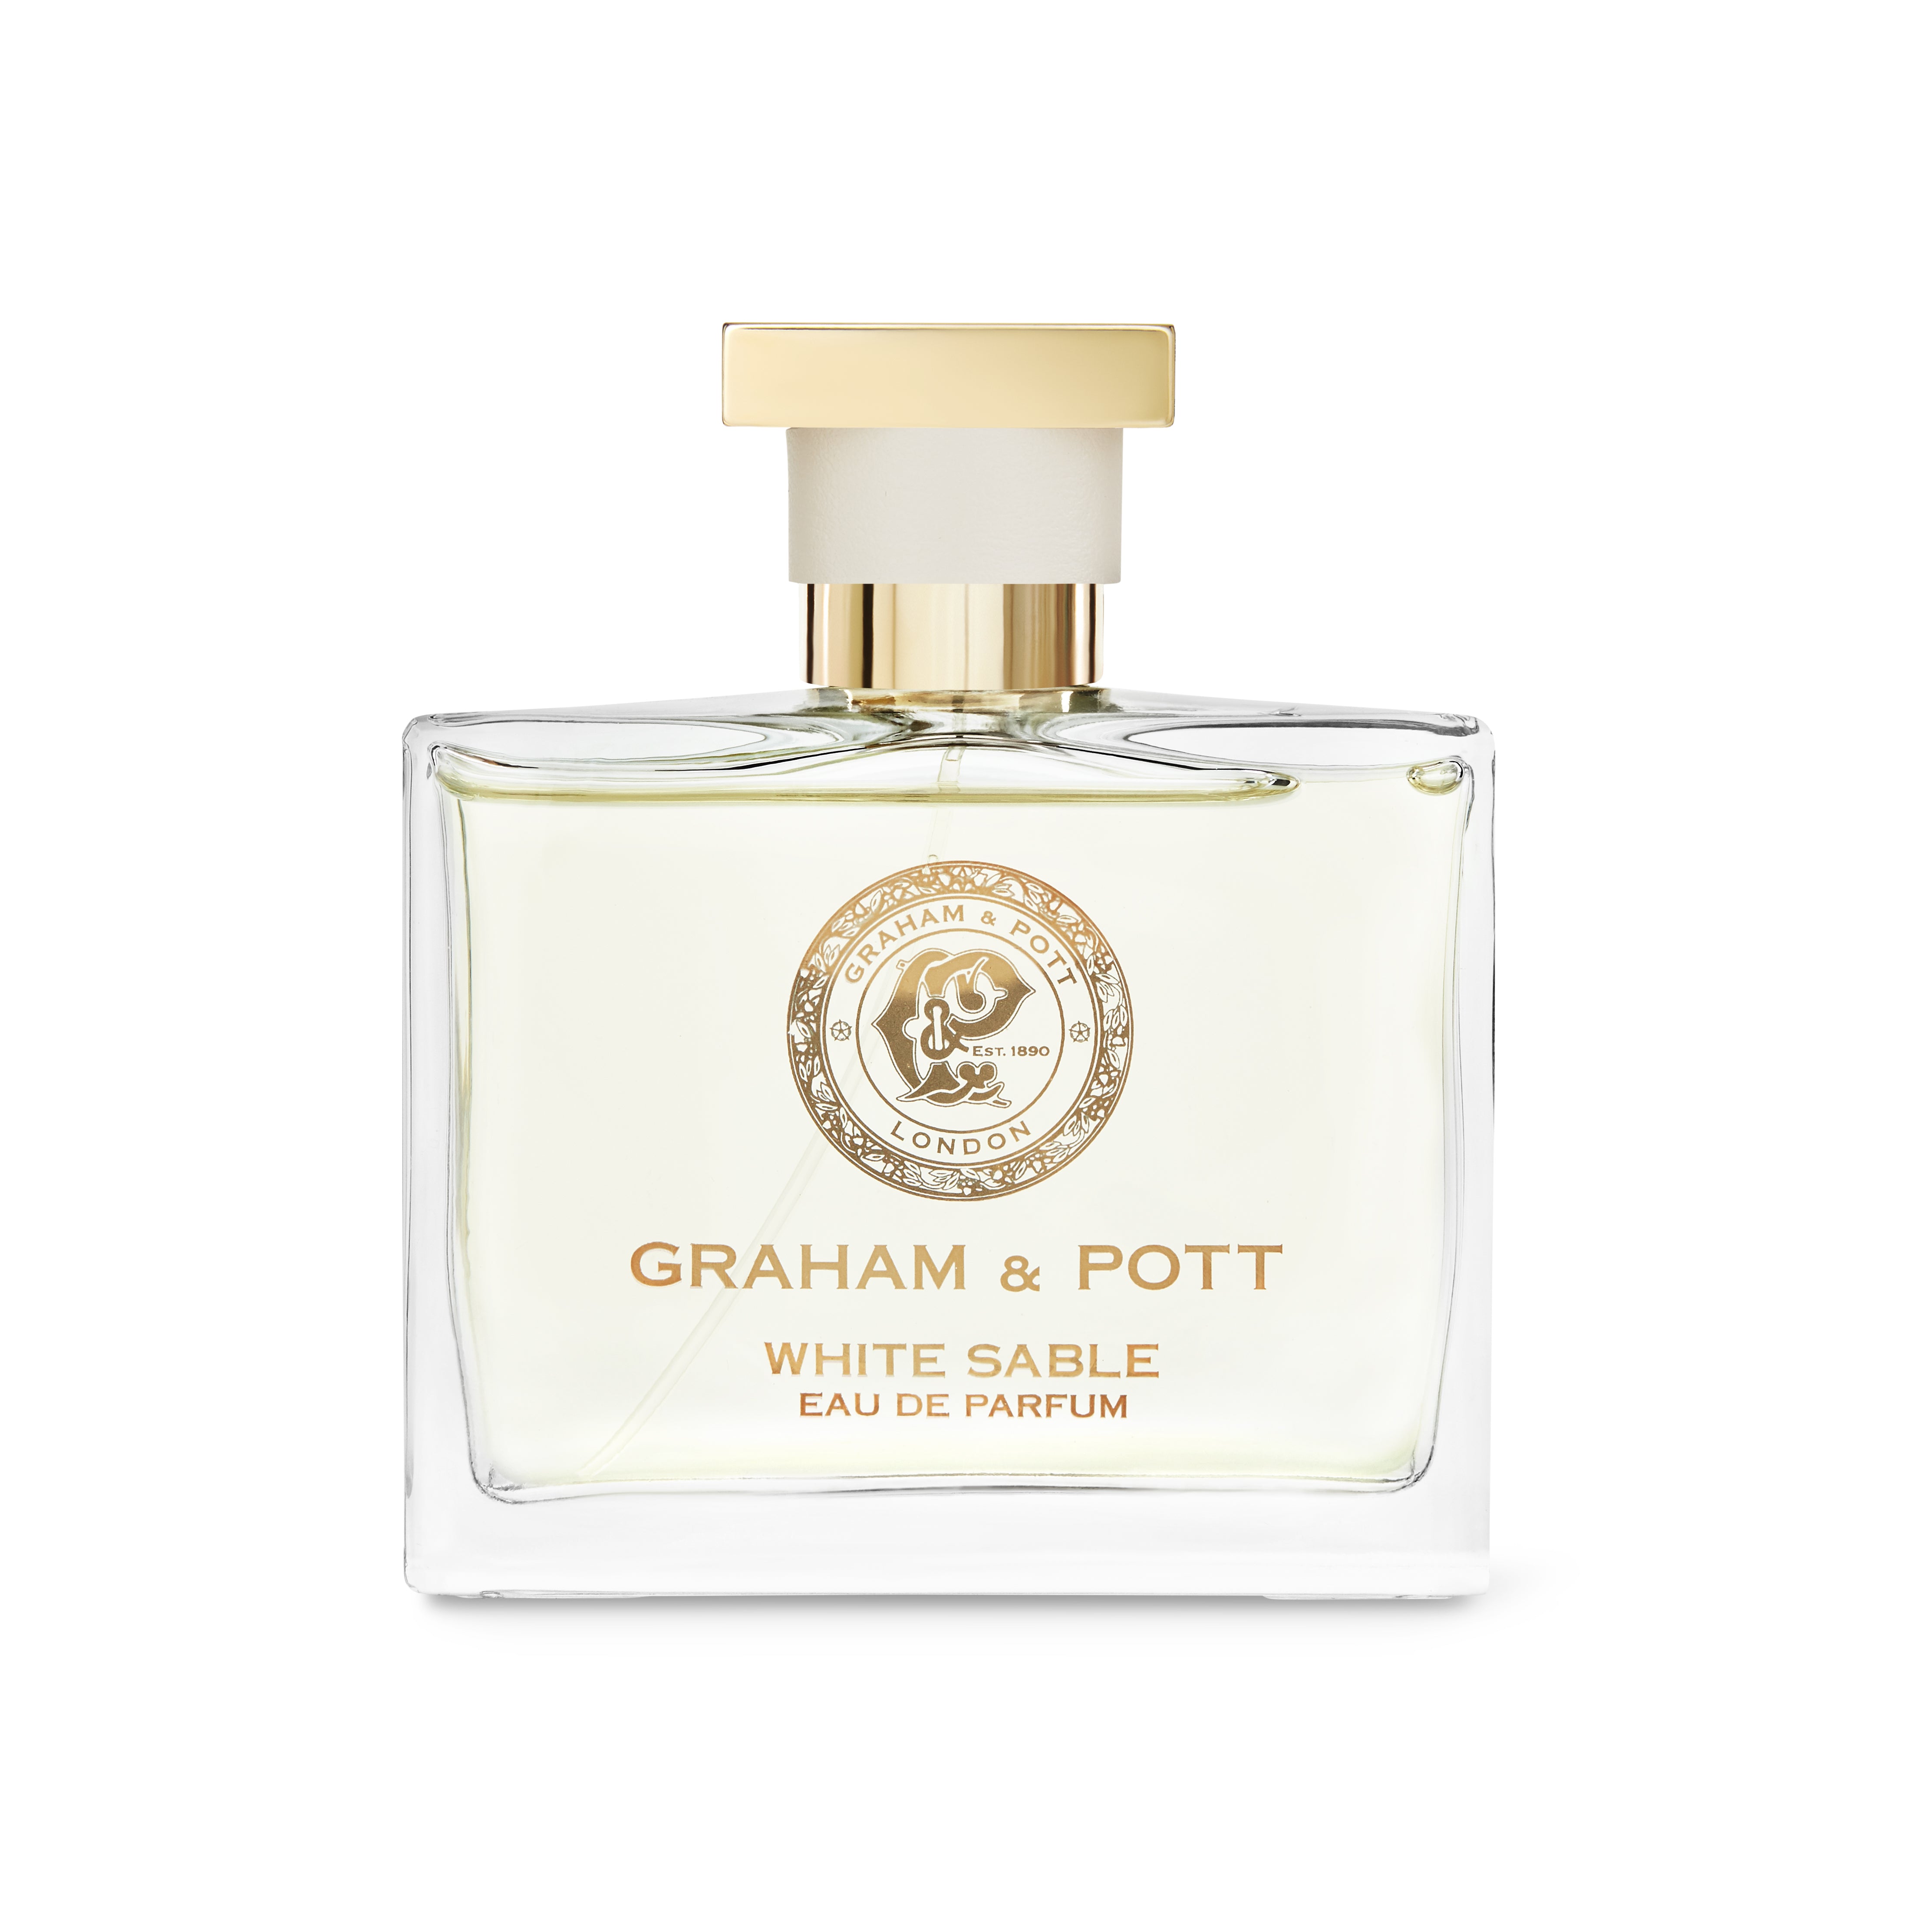 WHITE SABLE - GRAHAM & POTT